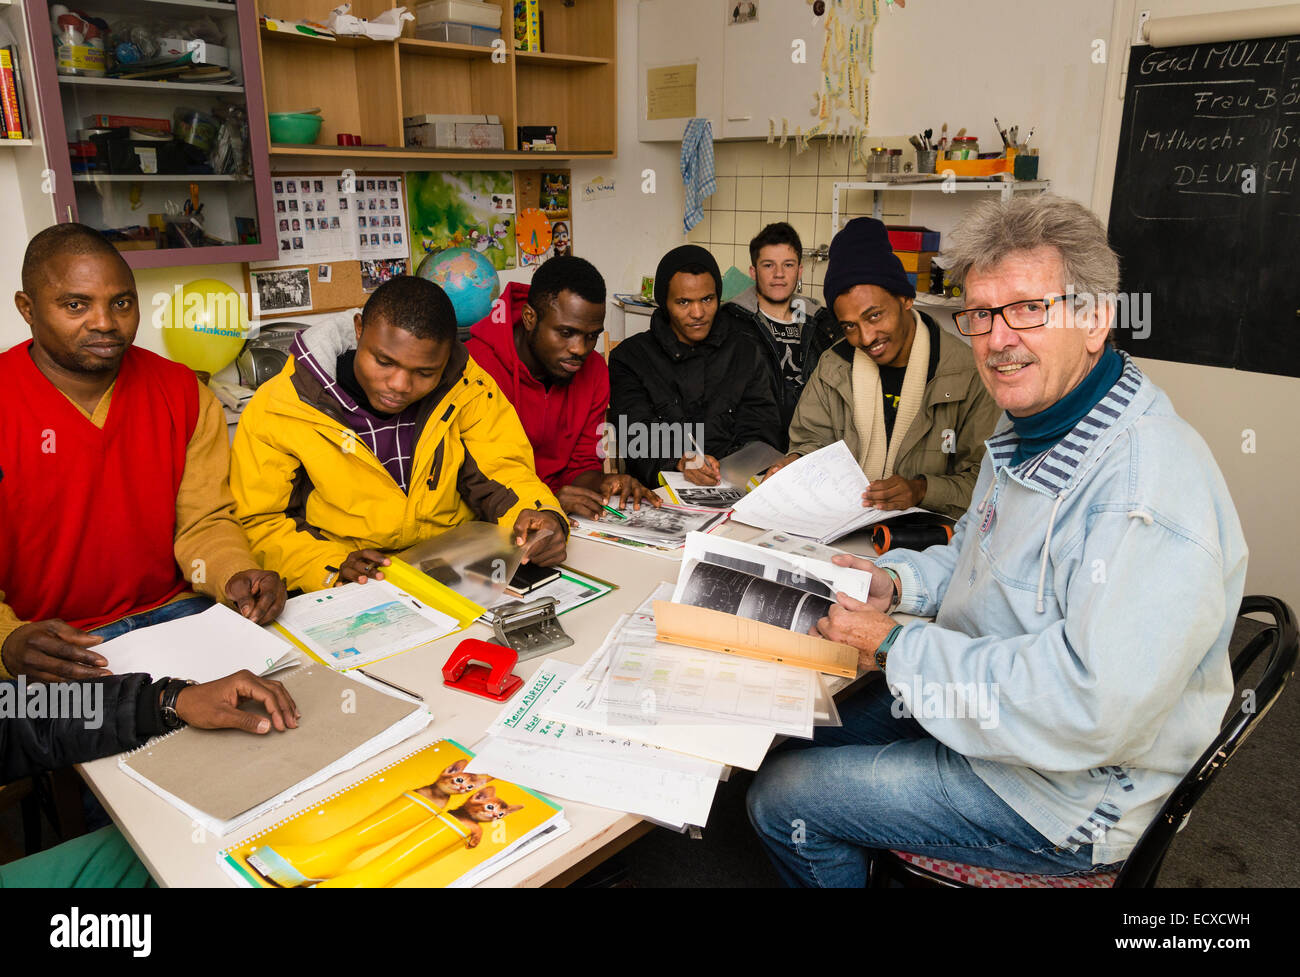 Un jubilado trabajador social, trabajando como voluntario ahora (derecha), da una lección en idioma alemán para la mayoría de los refugiados de Africa. Foto de stock